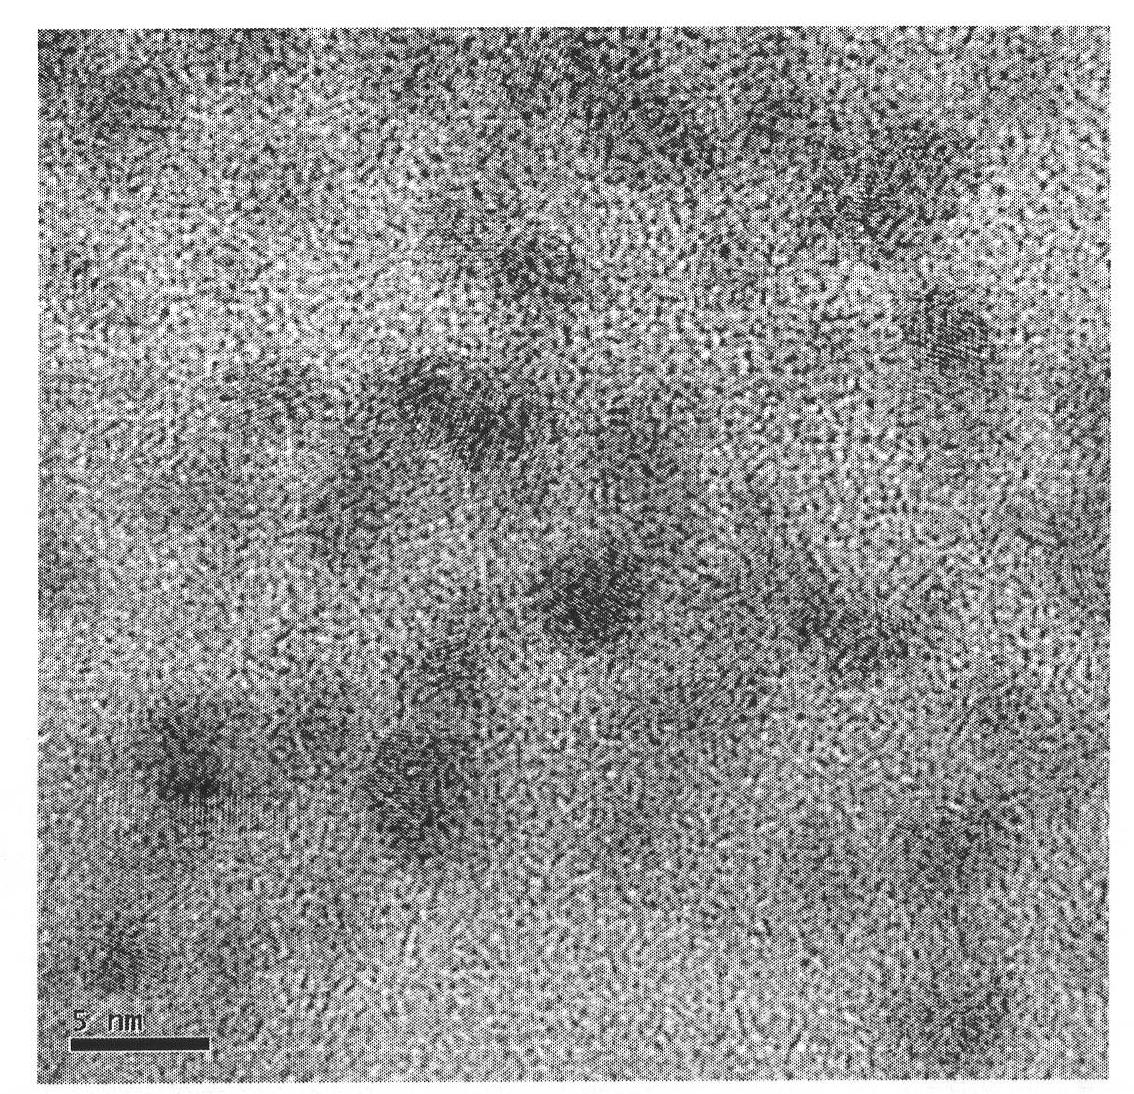 Method for preparing germanium quantum dot doped nano-titanium dioxide composite film